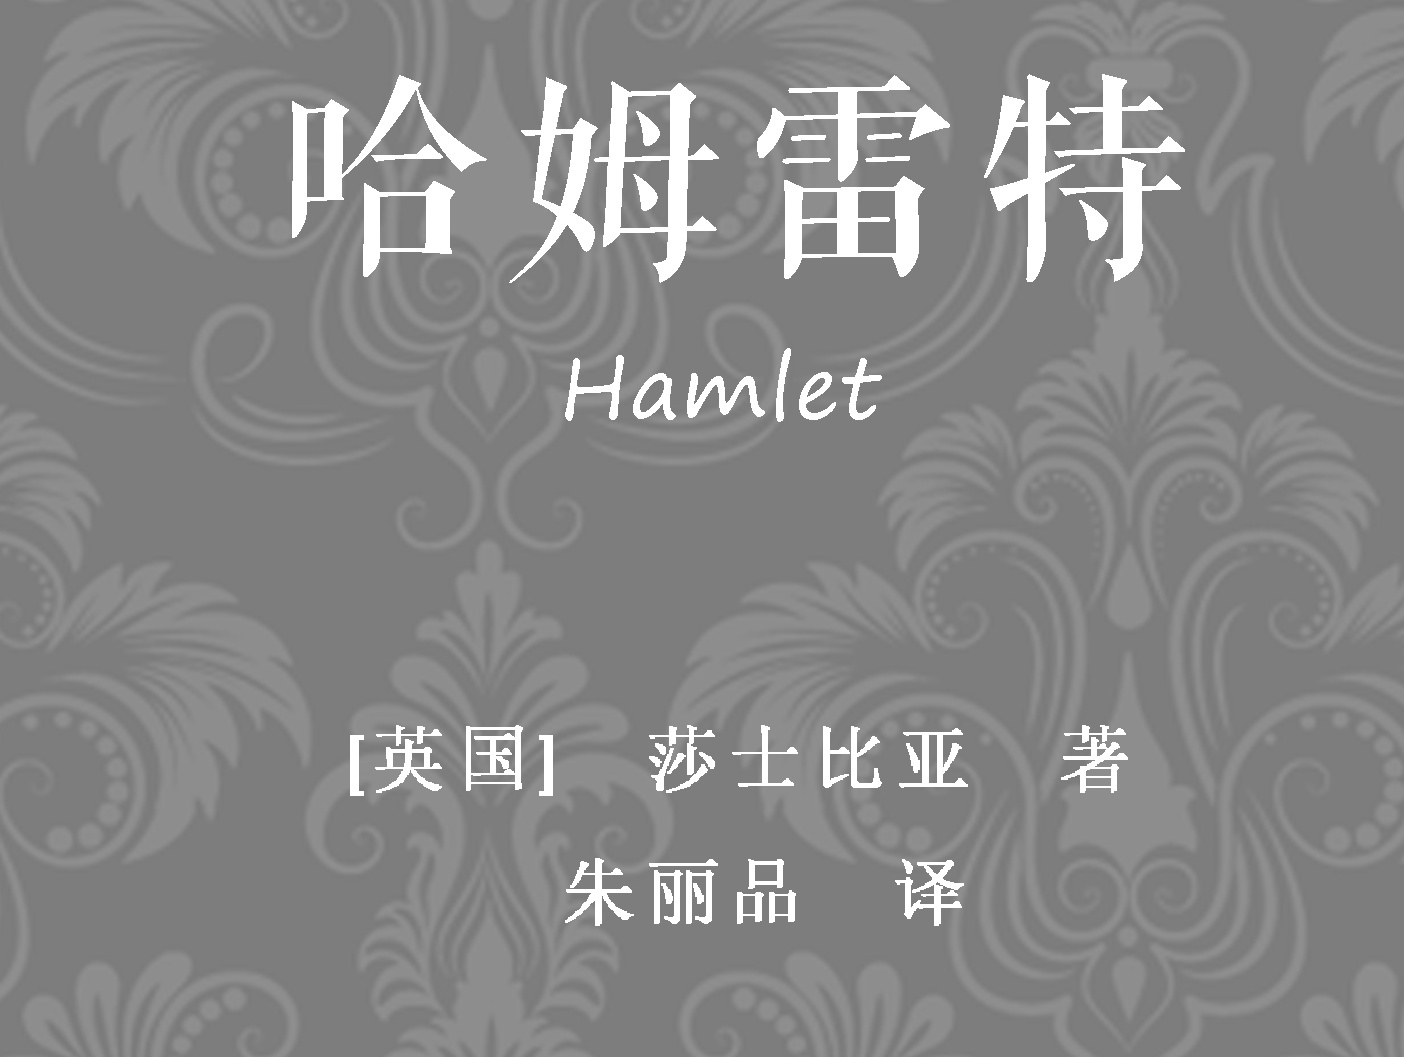 莎士比亚《哈姆雷特》2014年曼彻斯特皇家交易所剧院 [英字] 玛克辛·皮克主演 William Shakespeare Hamlet ...